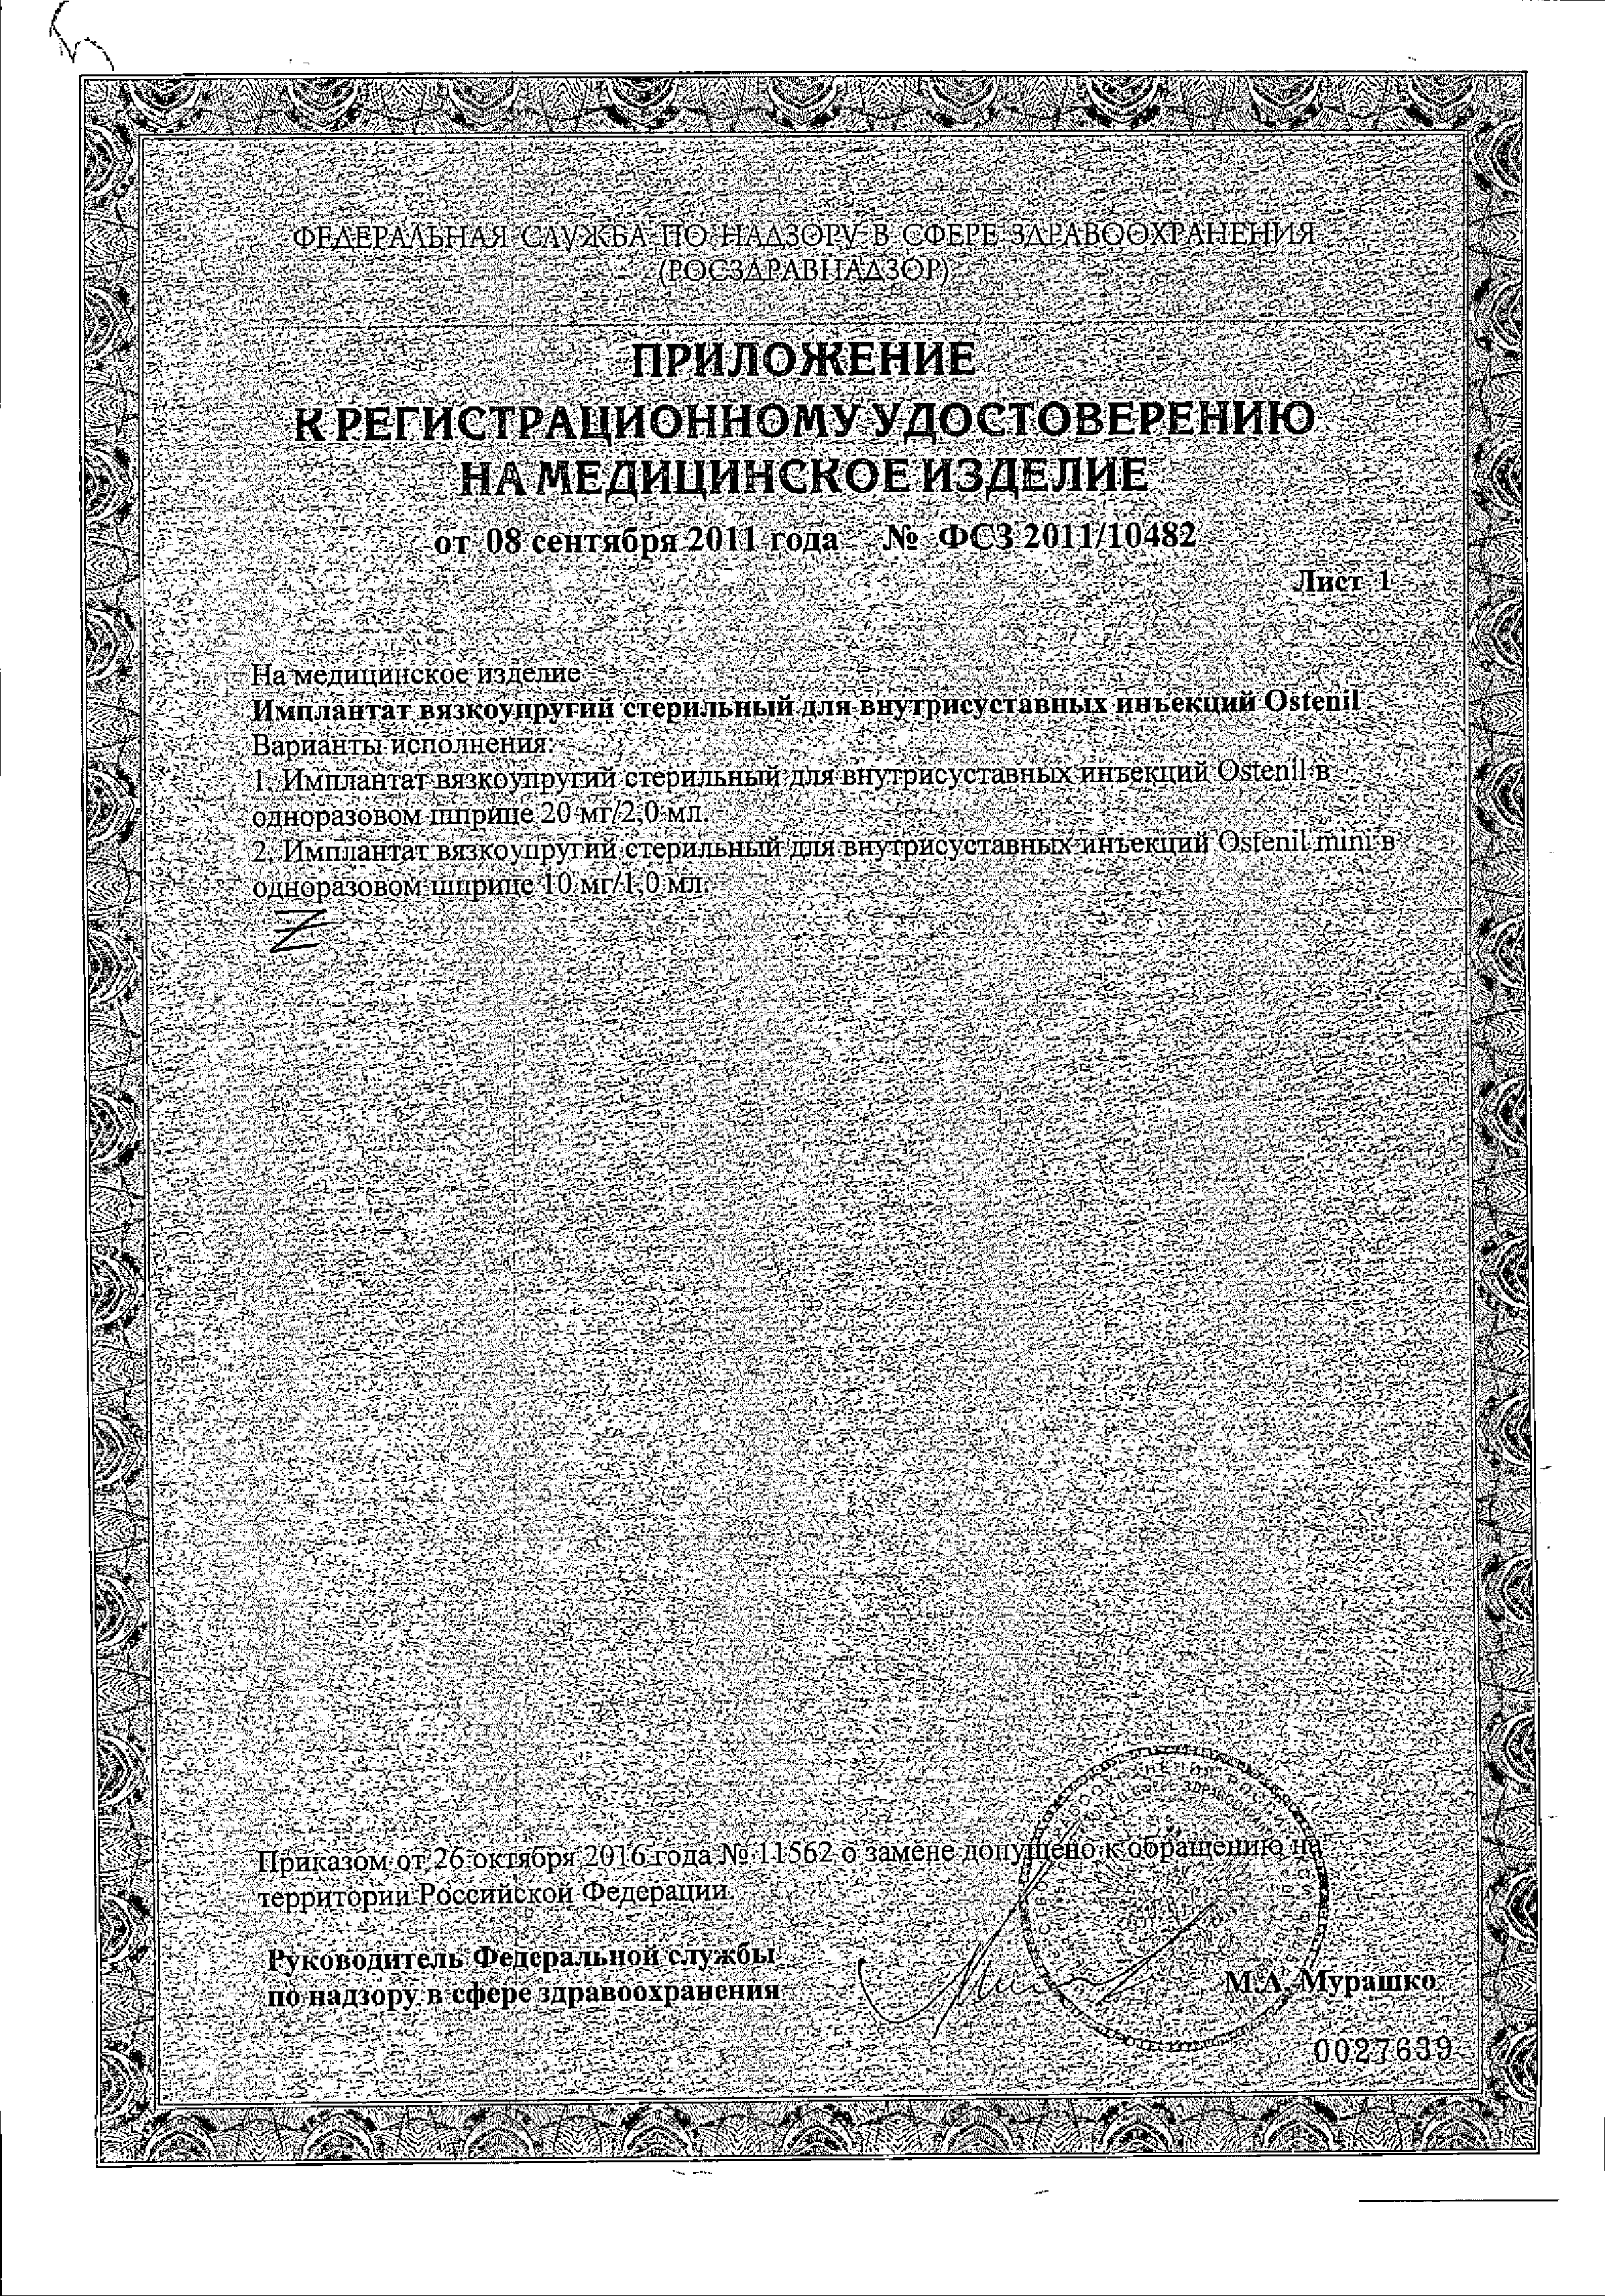 Остенил вязкоупругий сертификат